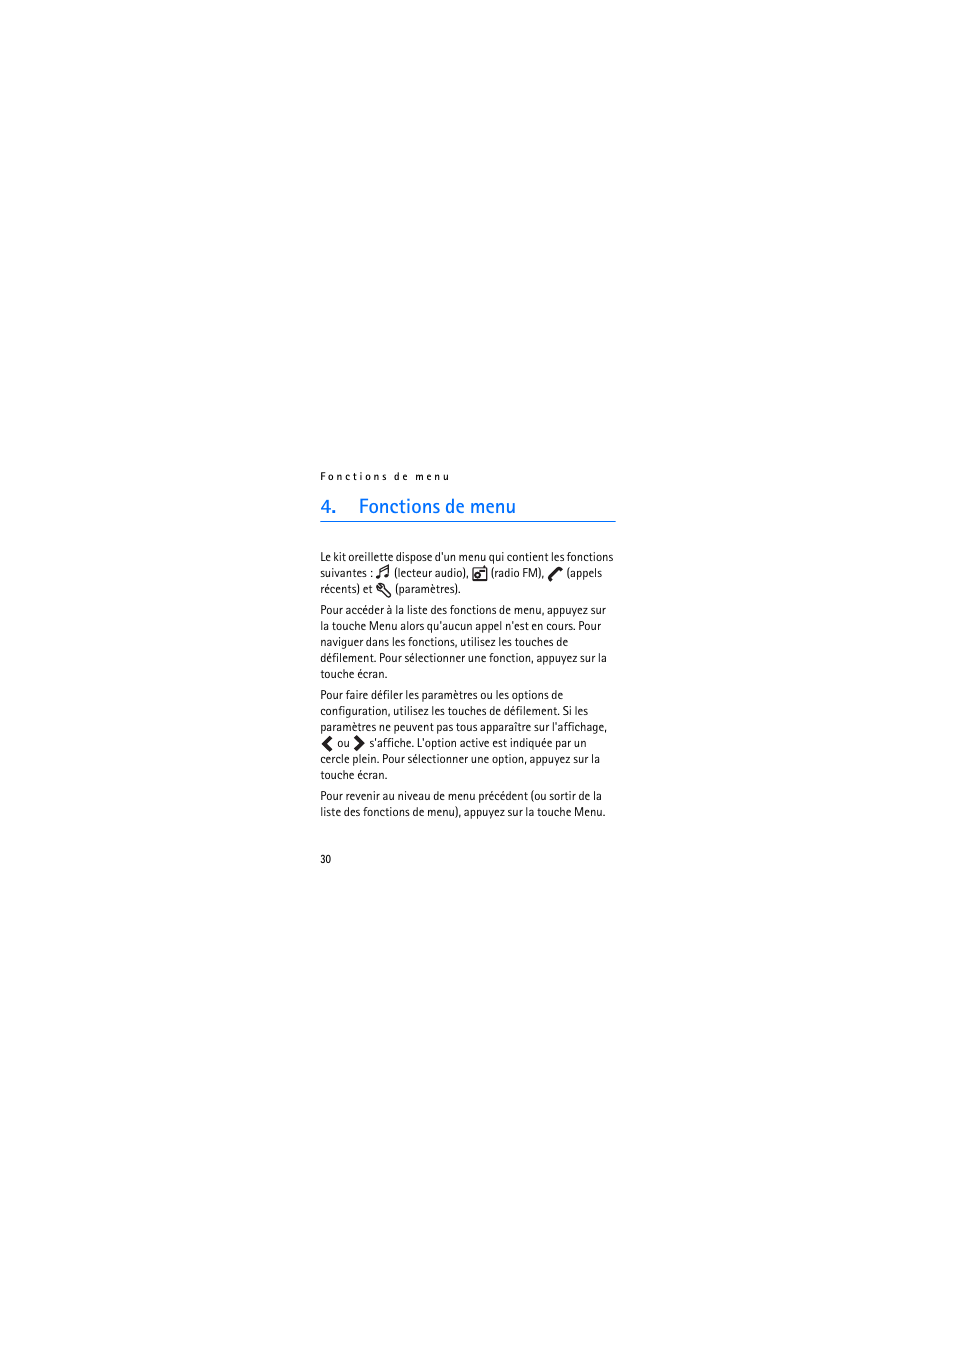 Fonctions de menu | Nokia Bluetooth Stereo Headset BH-903 Manuel d'utilisation | Page 30 / 45